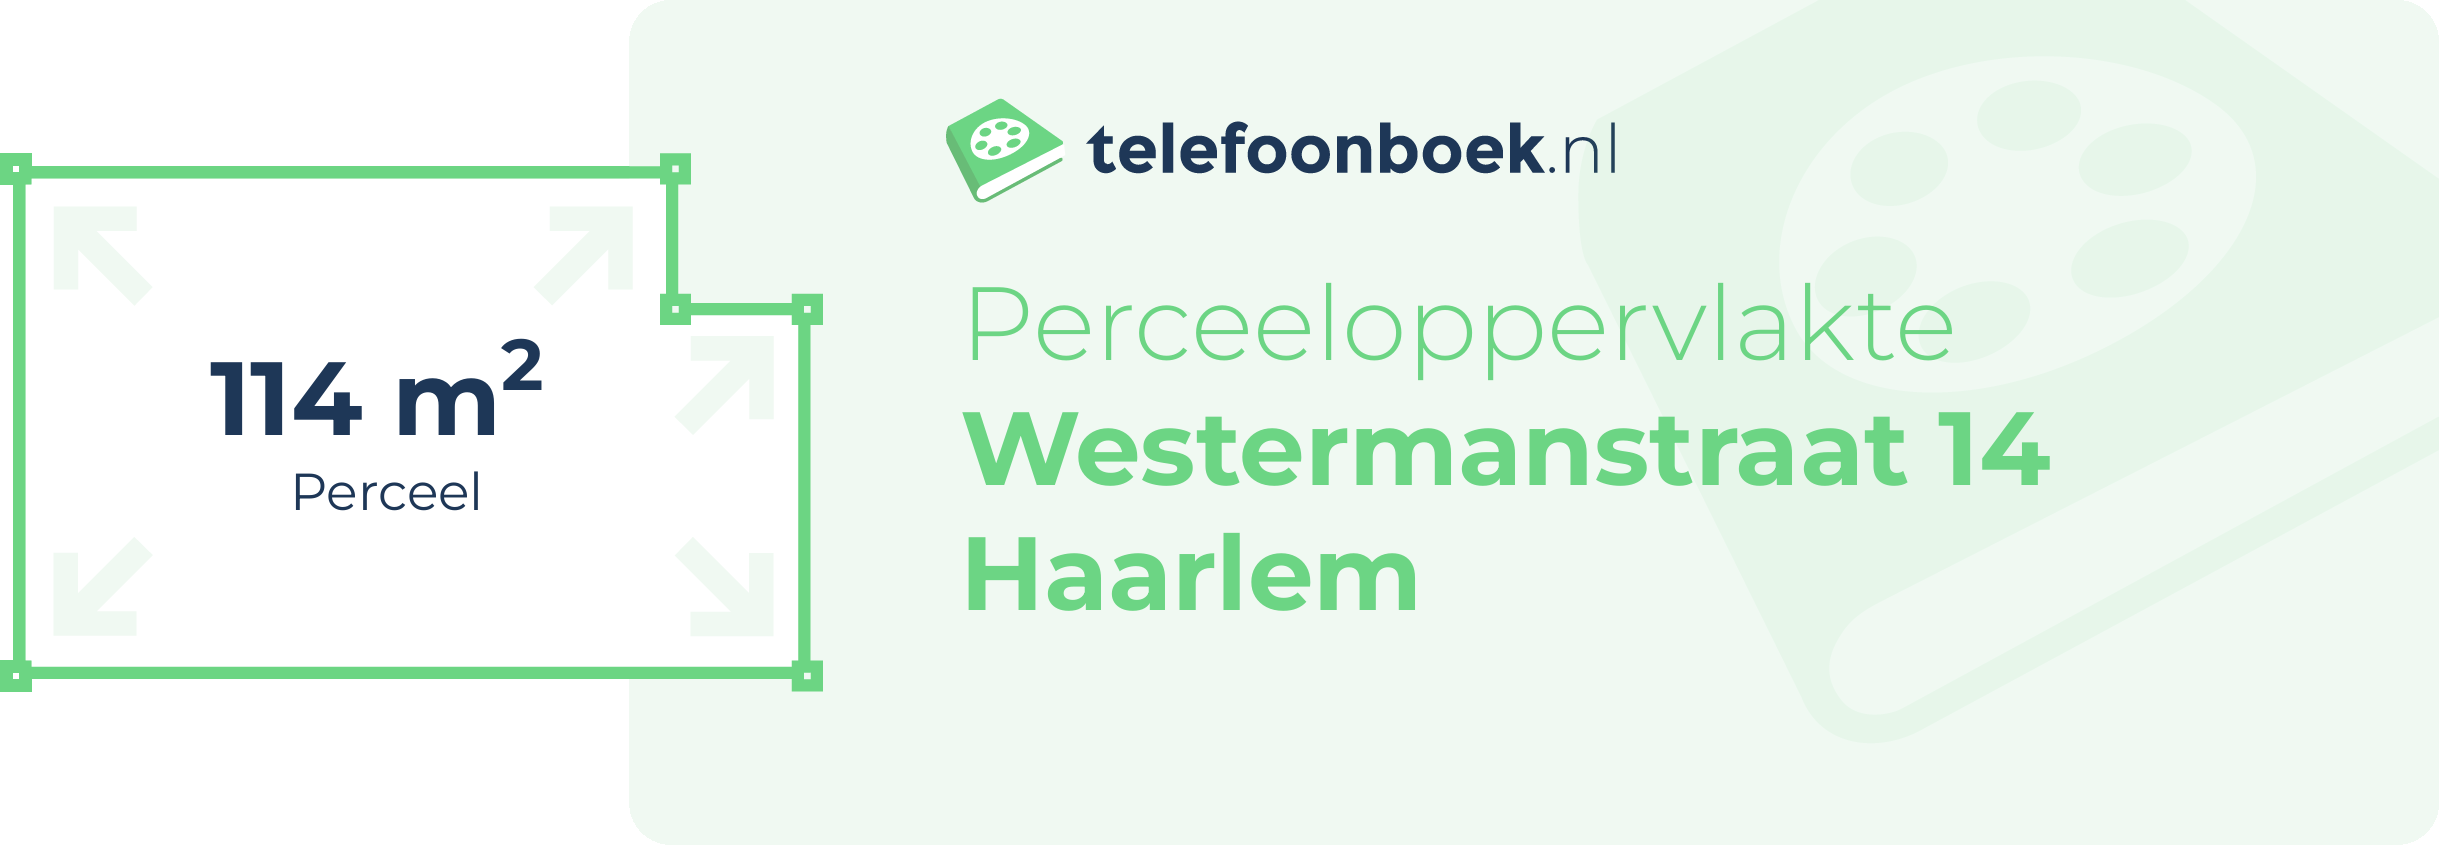 Perceeloppervlakte Westermanstraat 14 Haarlem